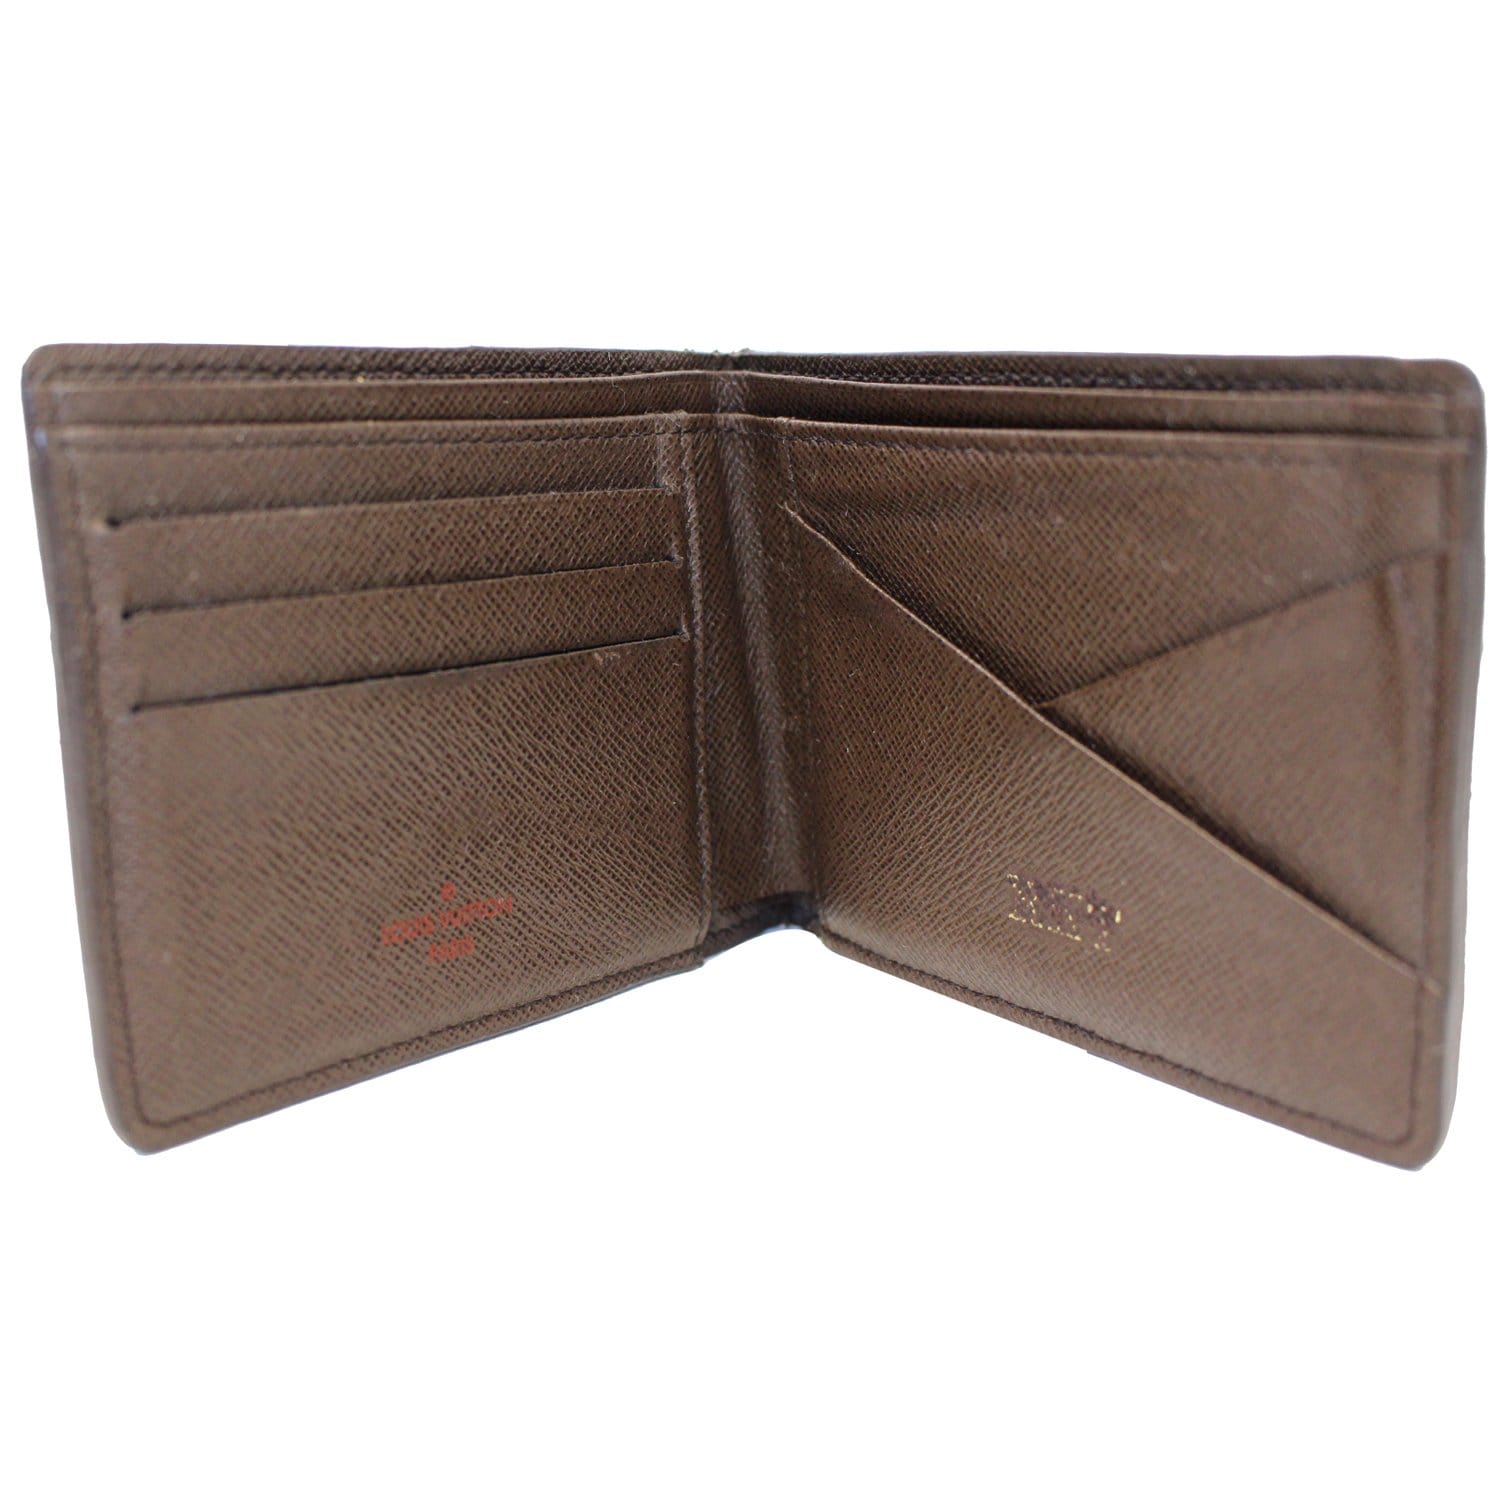 Damier In Brown Double Zip Wallet for Sale in Chesapeake, VA